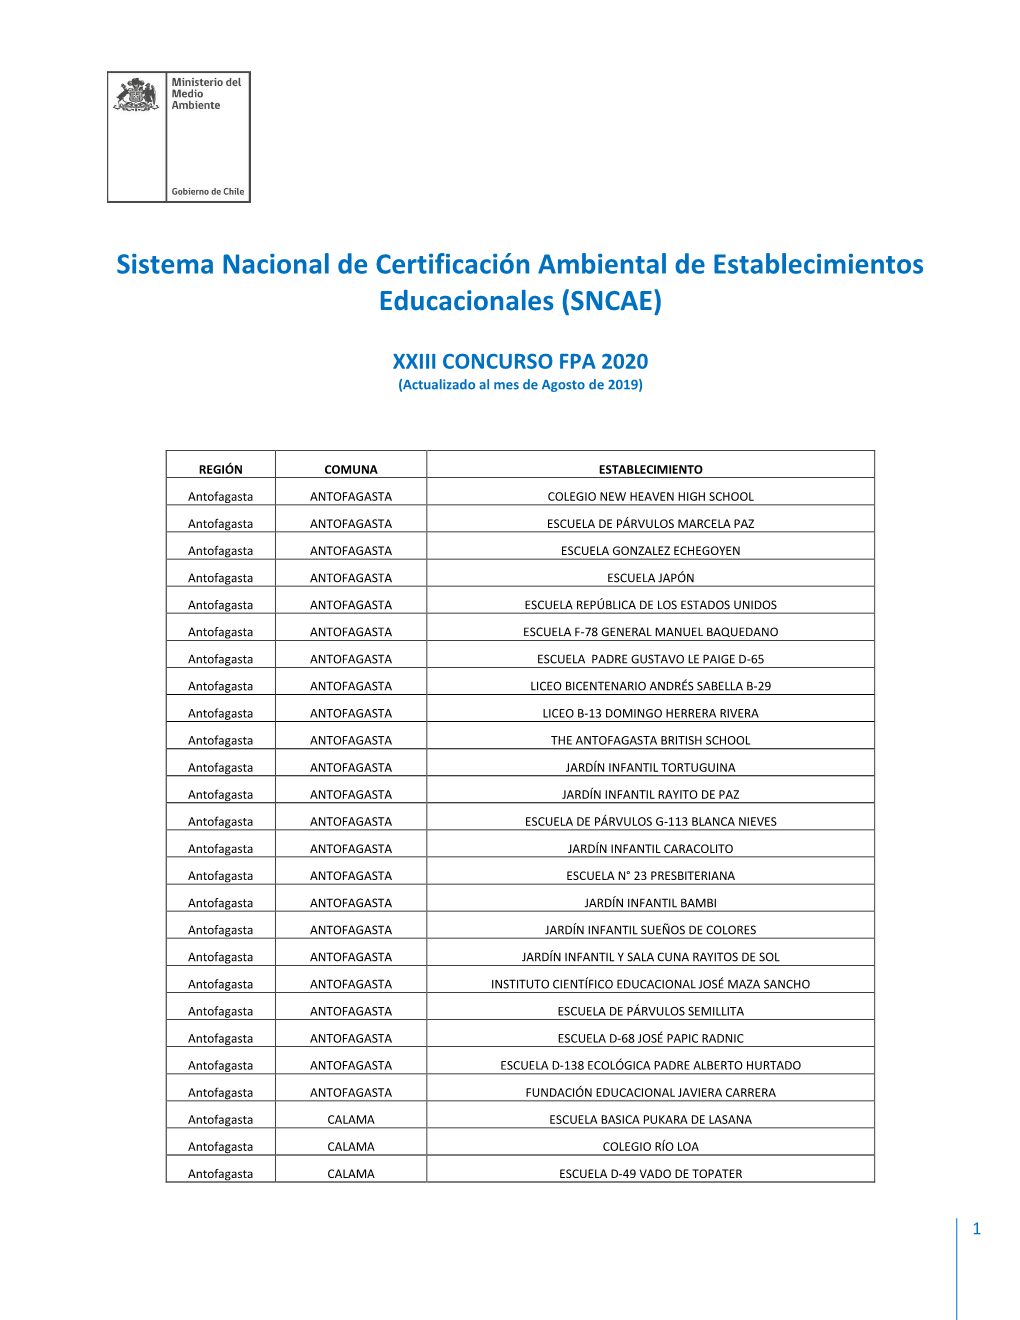 Establecimientos Certificados Ambientalmente FPA 2020